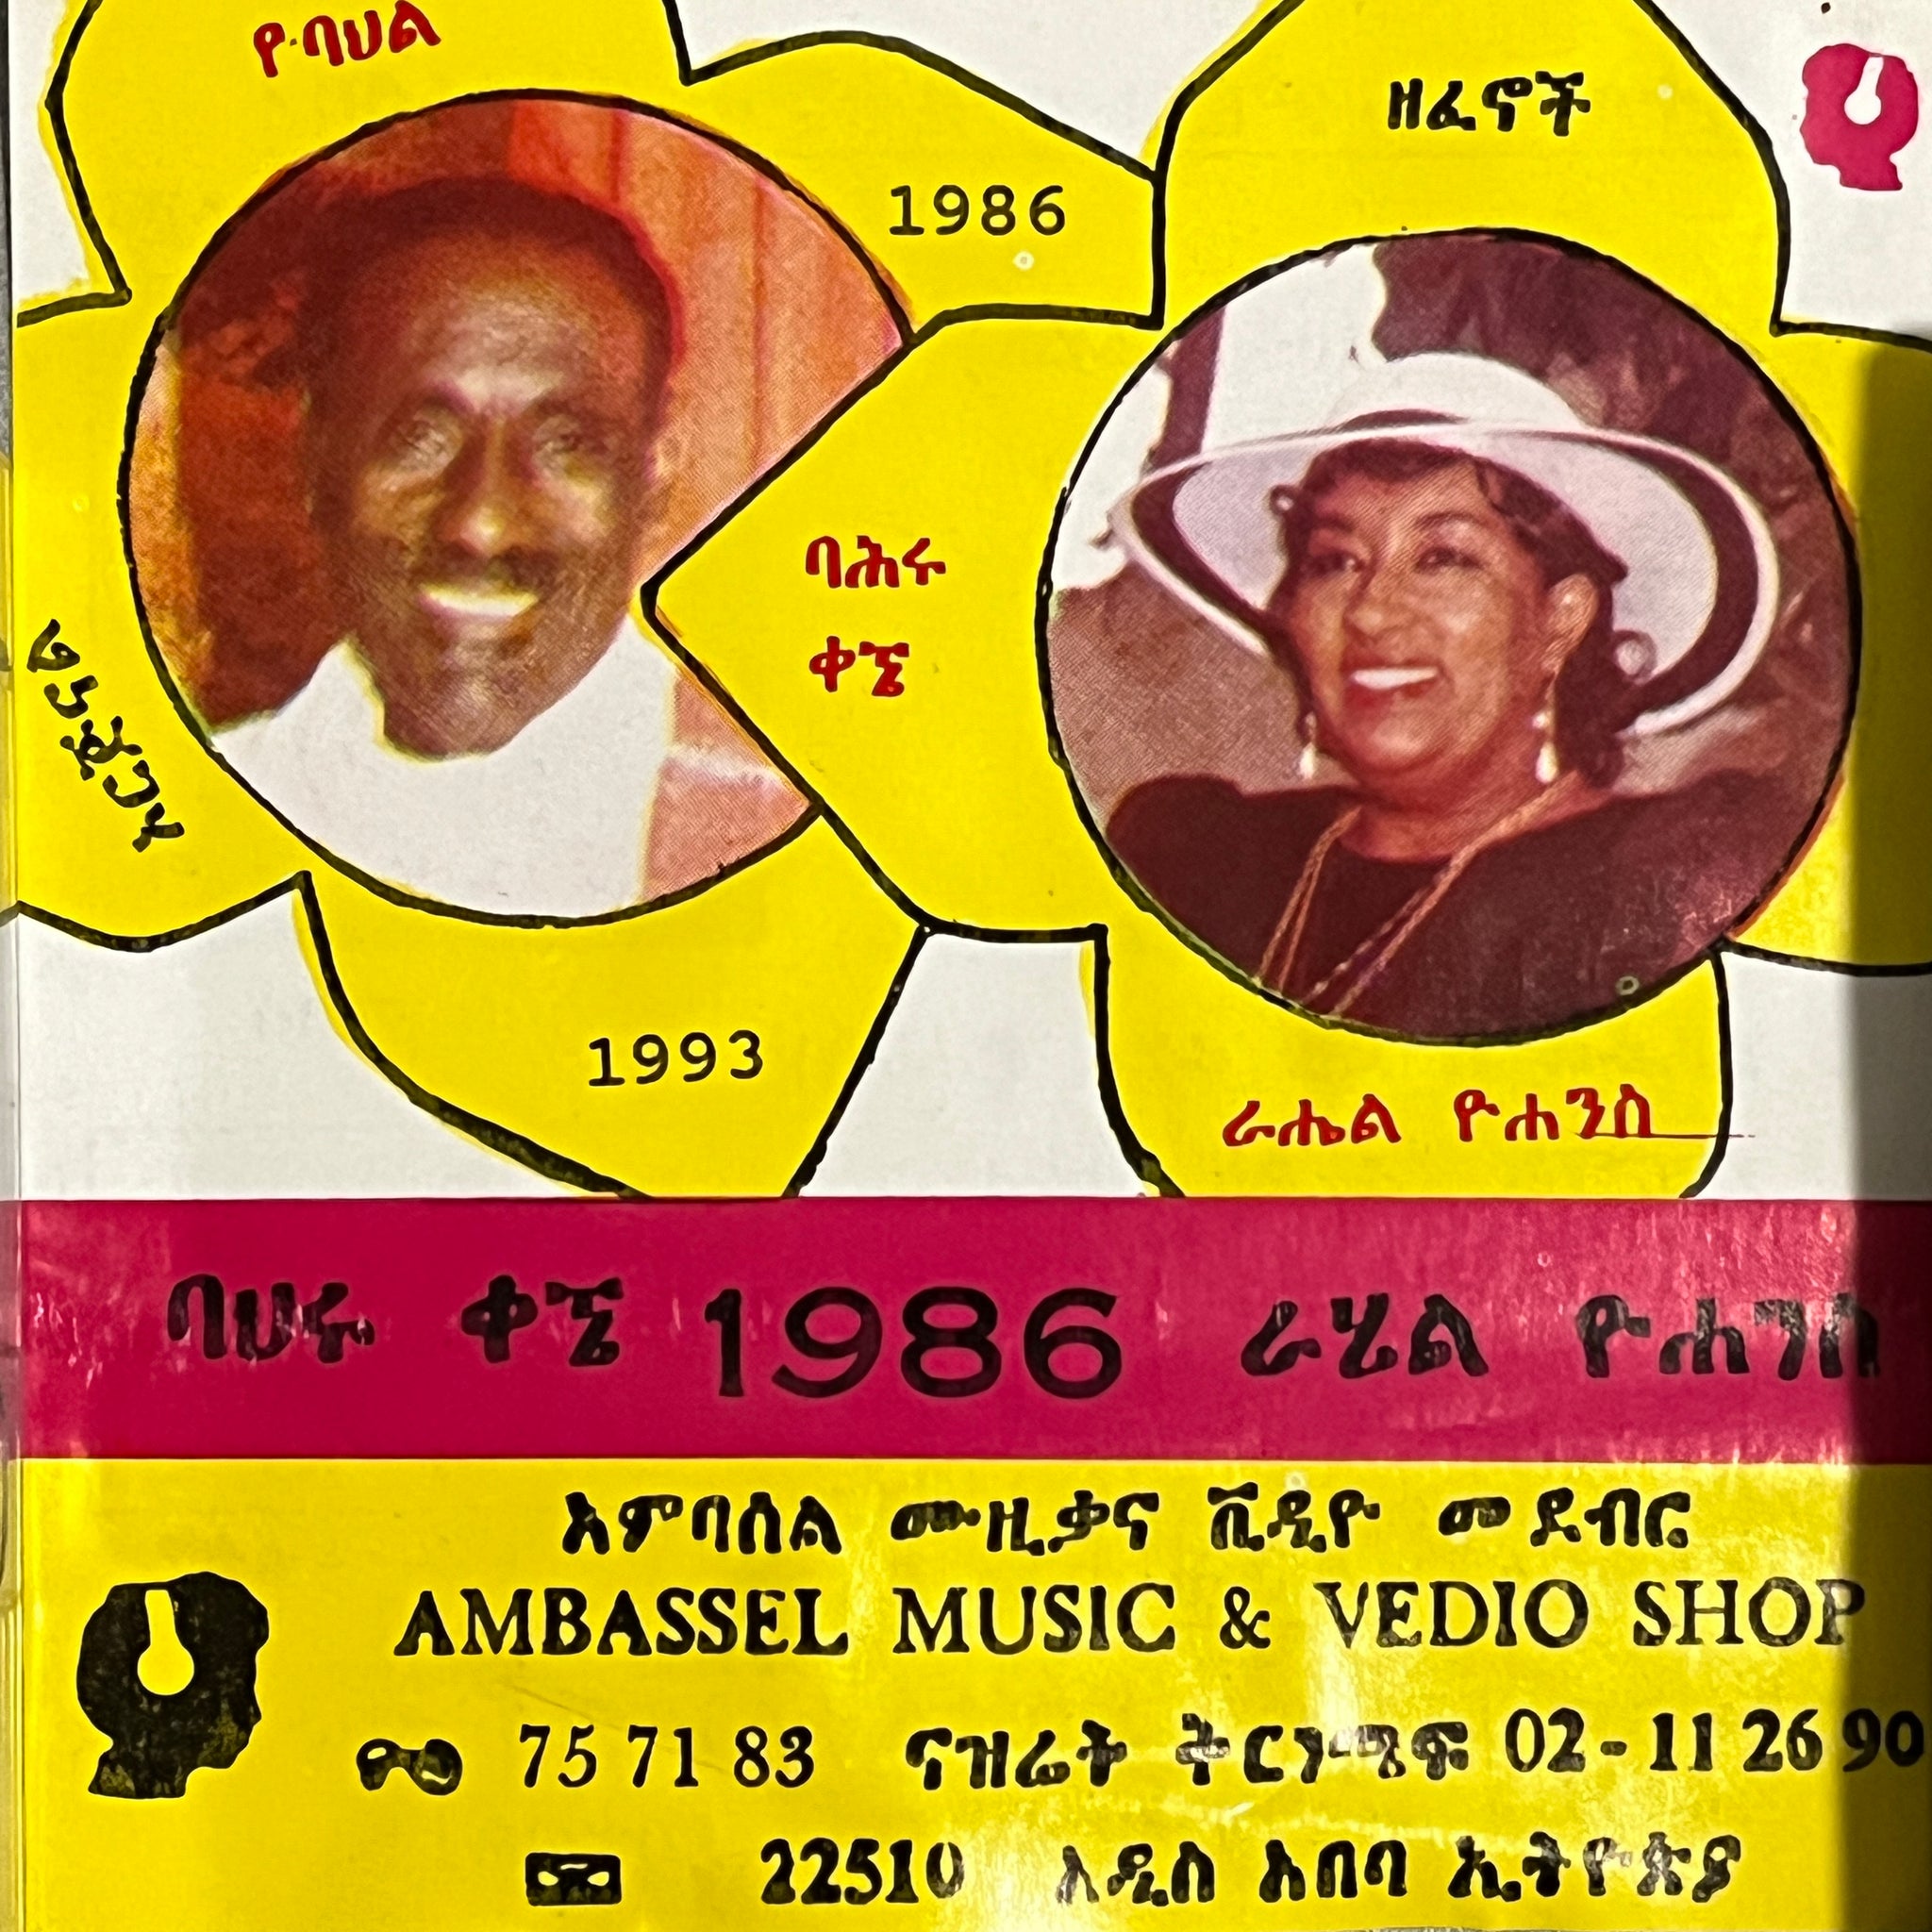 ባህሩ ቃኜ (Bahiru Kegne) & ራሔል ዮሀንስ (Rahel Yohannes) - 1986/1993